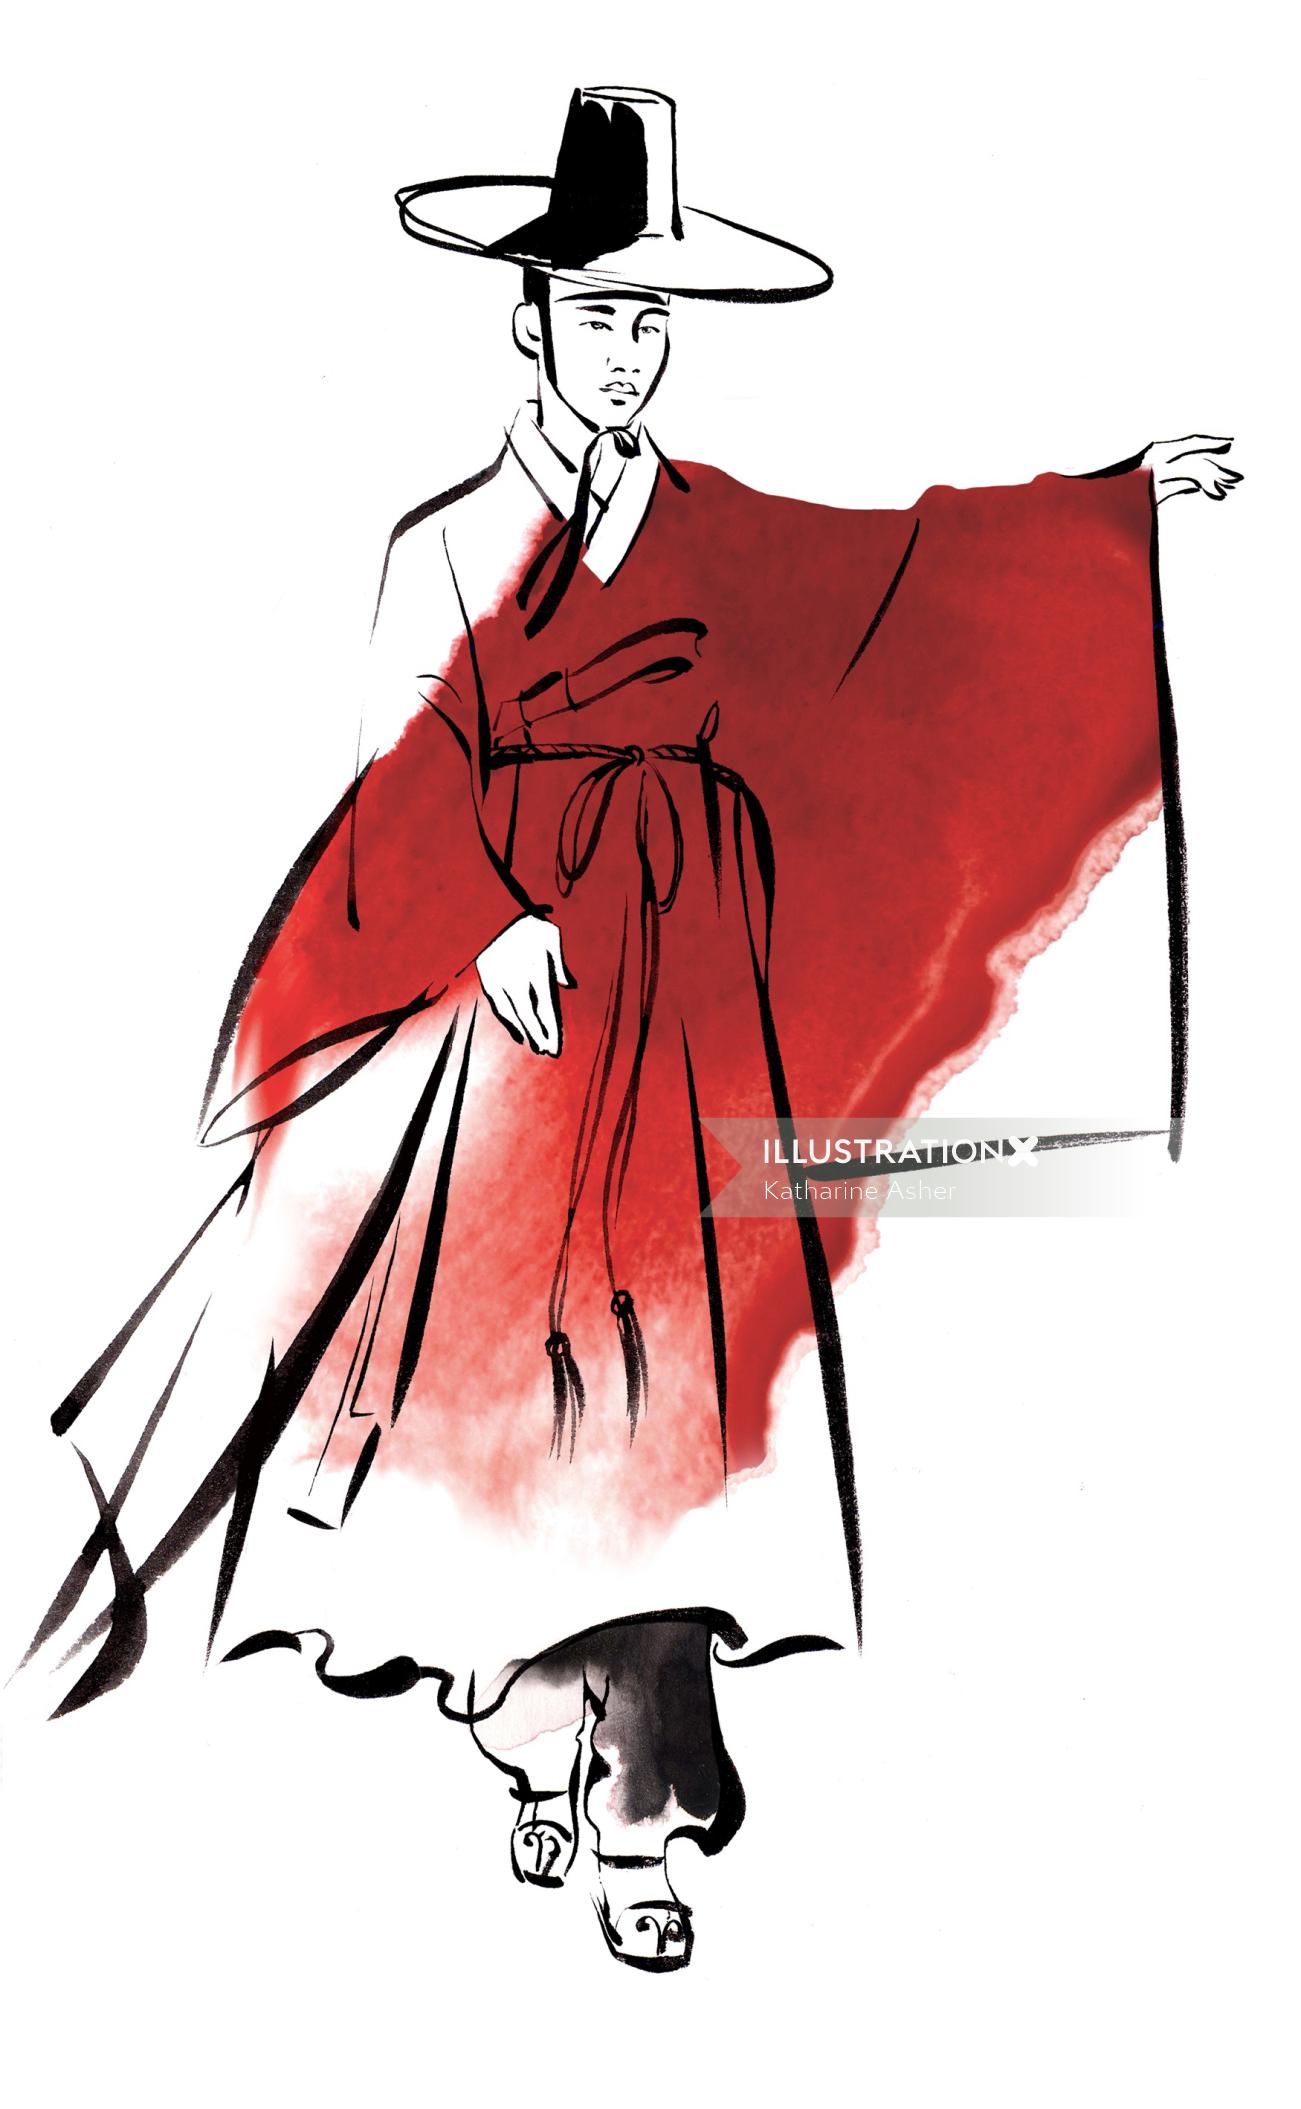 キャサリンアッシャーによる男性の韓国の伝統的なドレスのイラスト